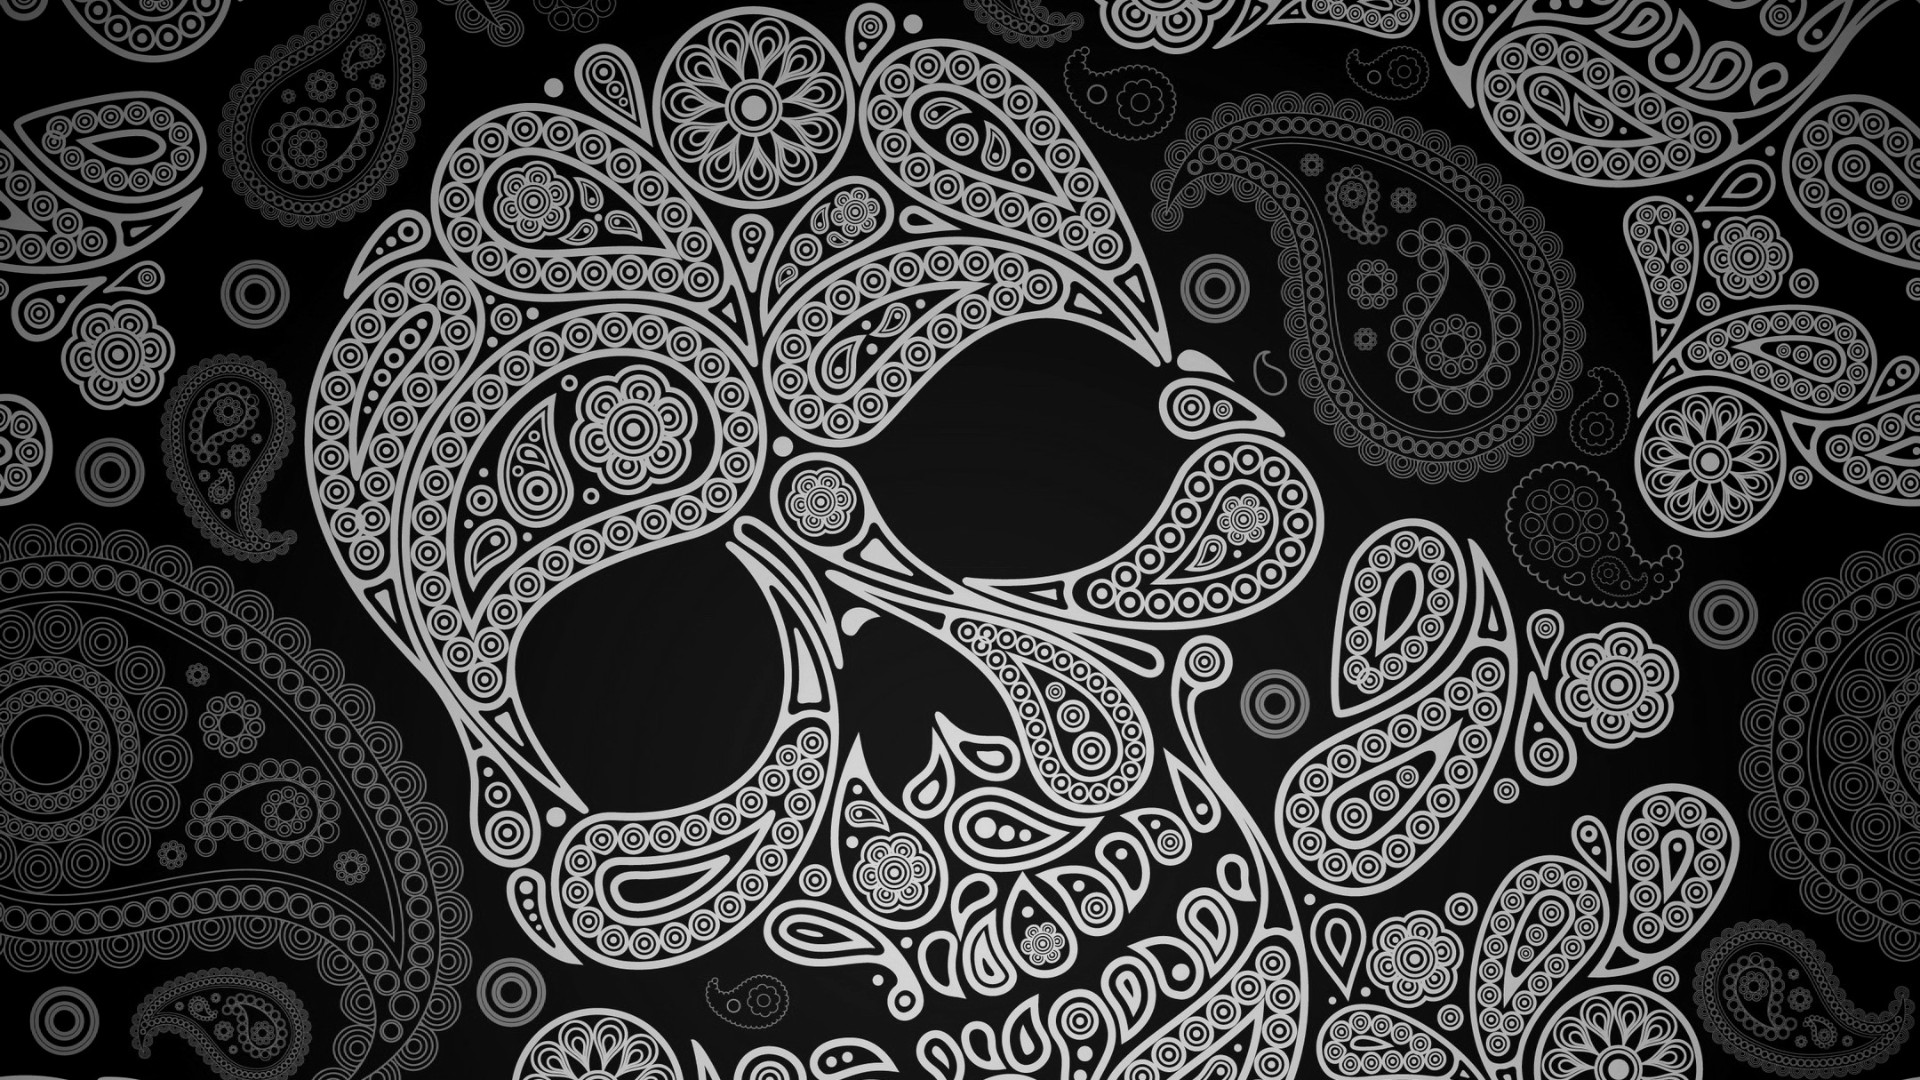 1920x1080 Sugar Skull Wallpapers - WallpaperSafari